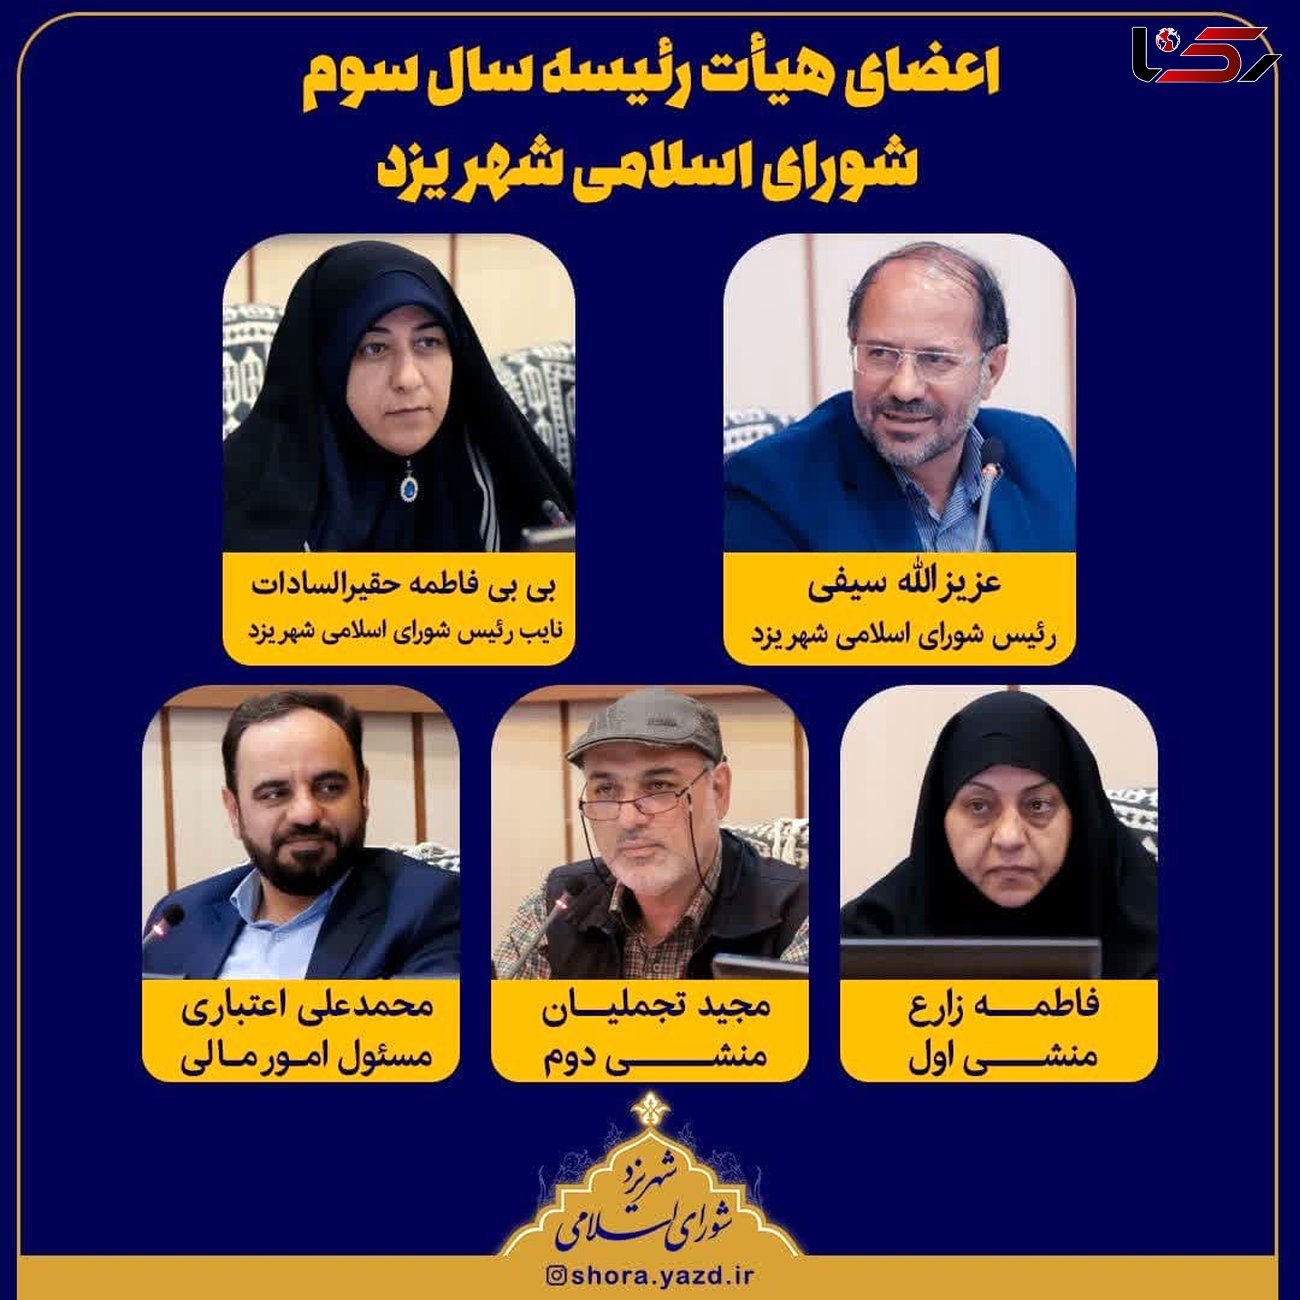 برگزاری انتخابات هیات رئیسه شورای شهر یزد/ عزیزالله سیفی بار دیگر رئیس شورا شد